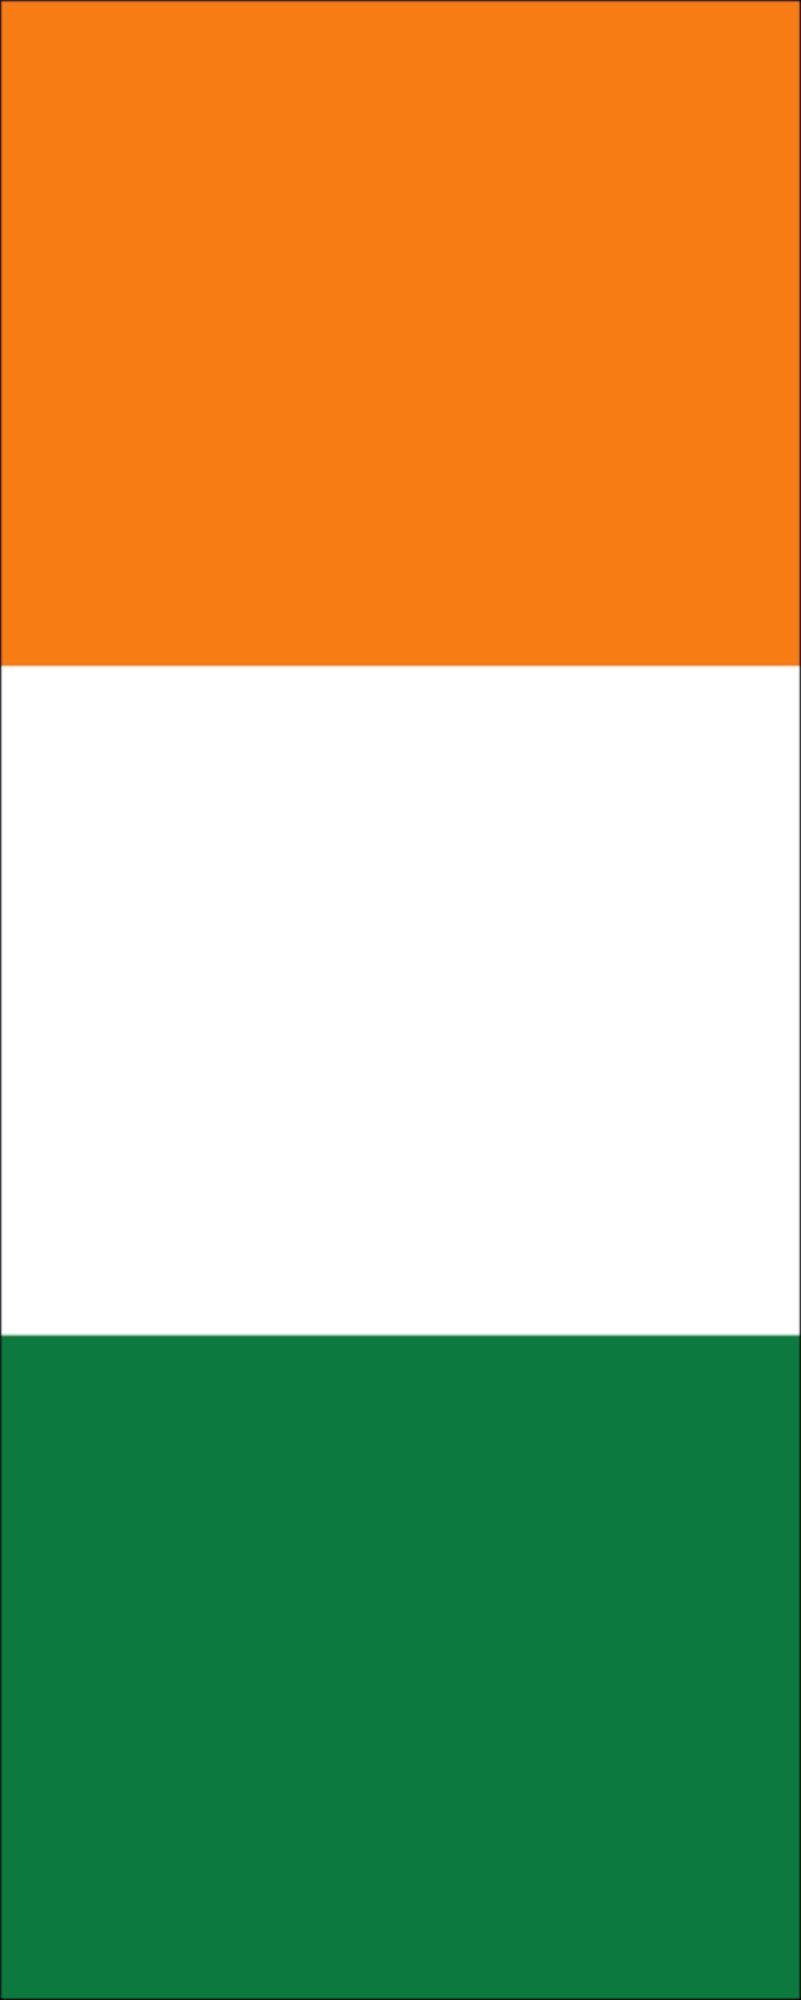 flaggenmeer Flagge Elfenbeinküste 160 g/m² Hochformat